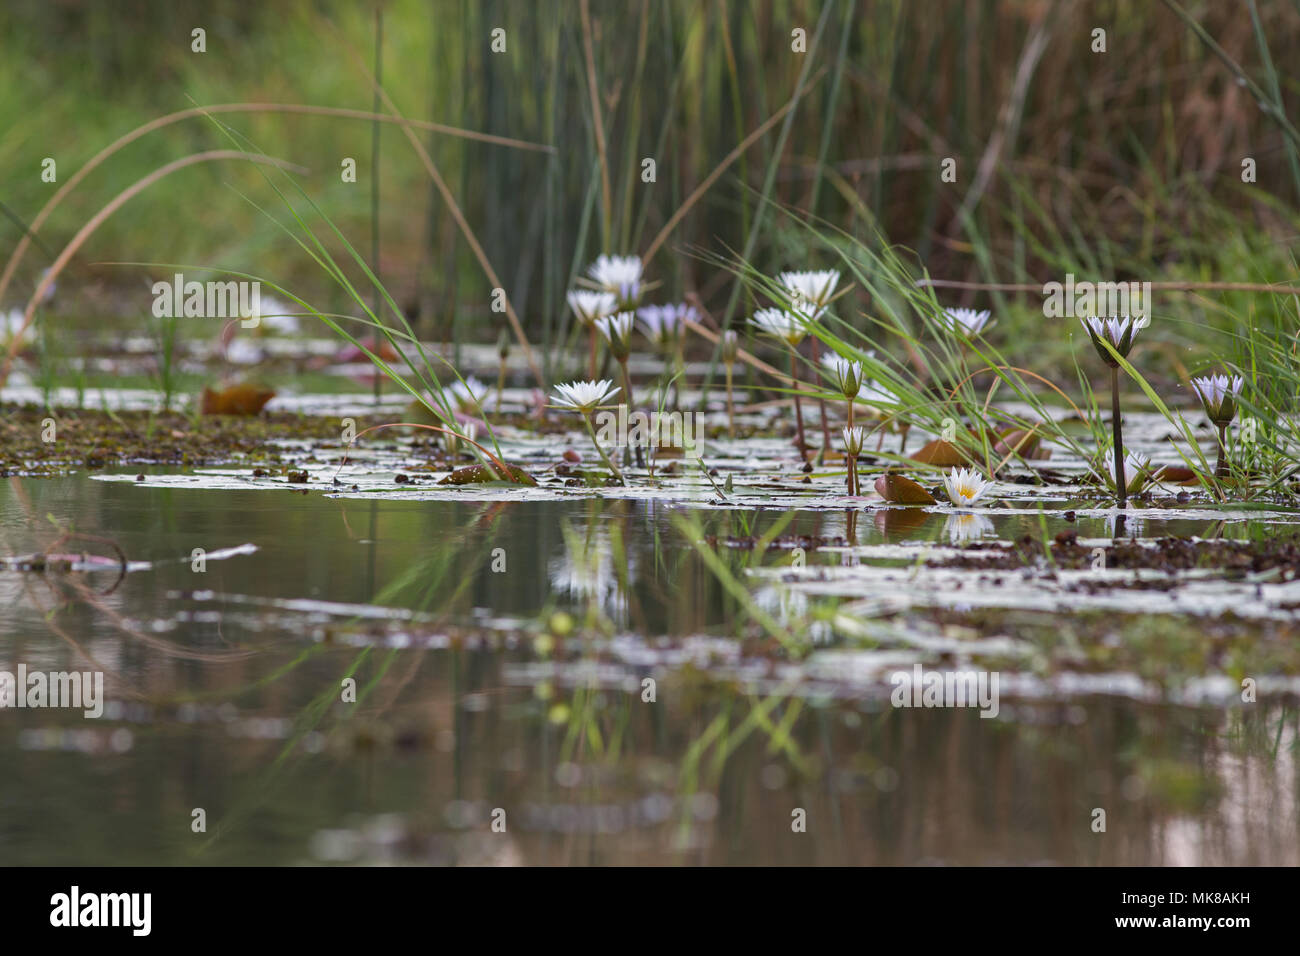 Nénuphar (Nymphaea nouchali caerulea). Bud, bourgeons et fleurs ouvertes, et des réflexions sur la surface de l'eau. Piscine d'eau douce. Delta de l'Okavango. Le Botswana, l'Afrique Banque D'Images